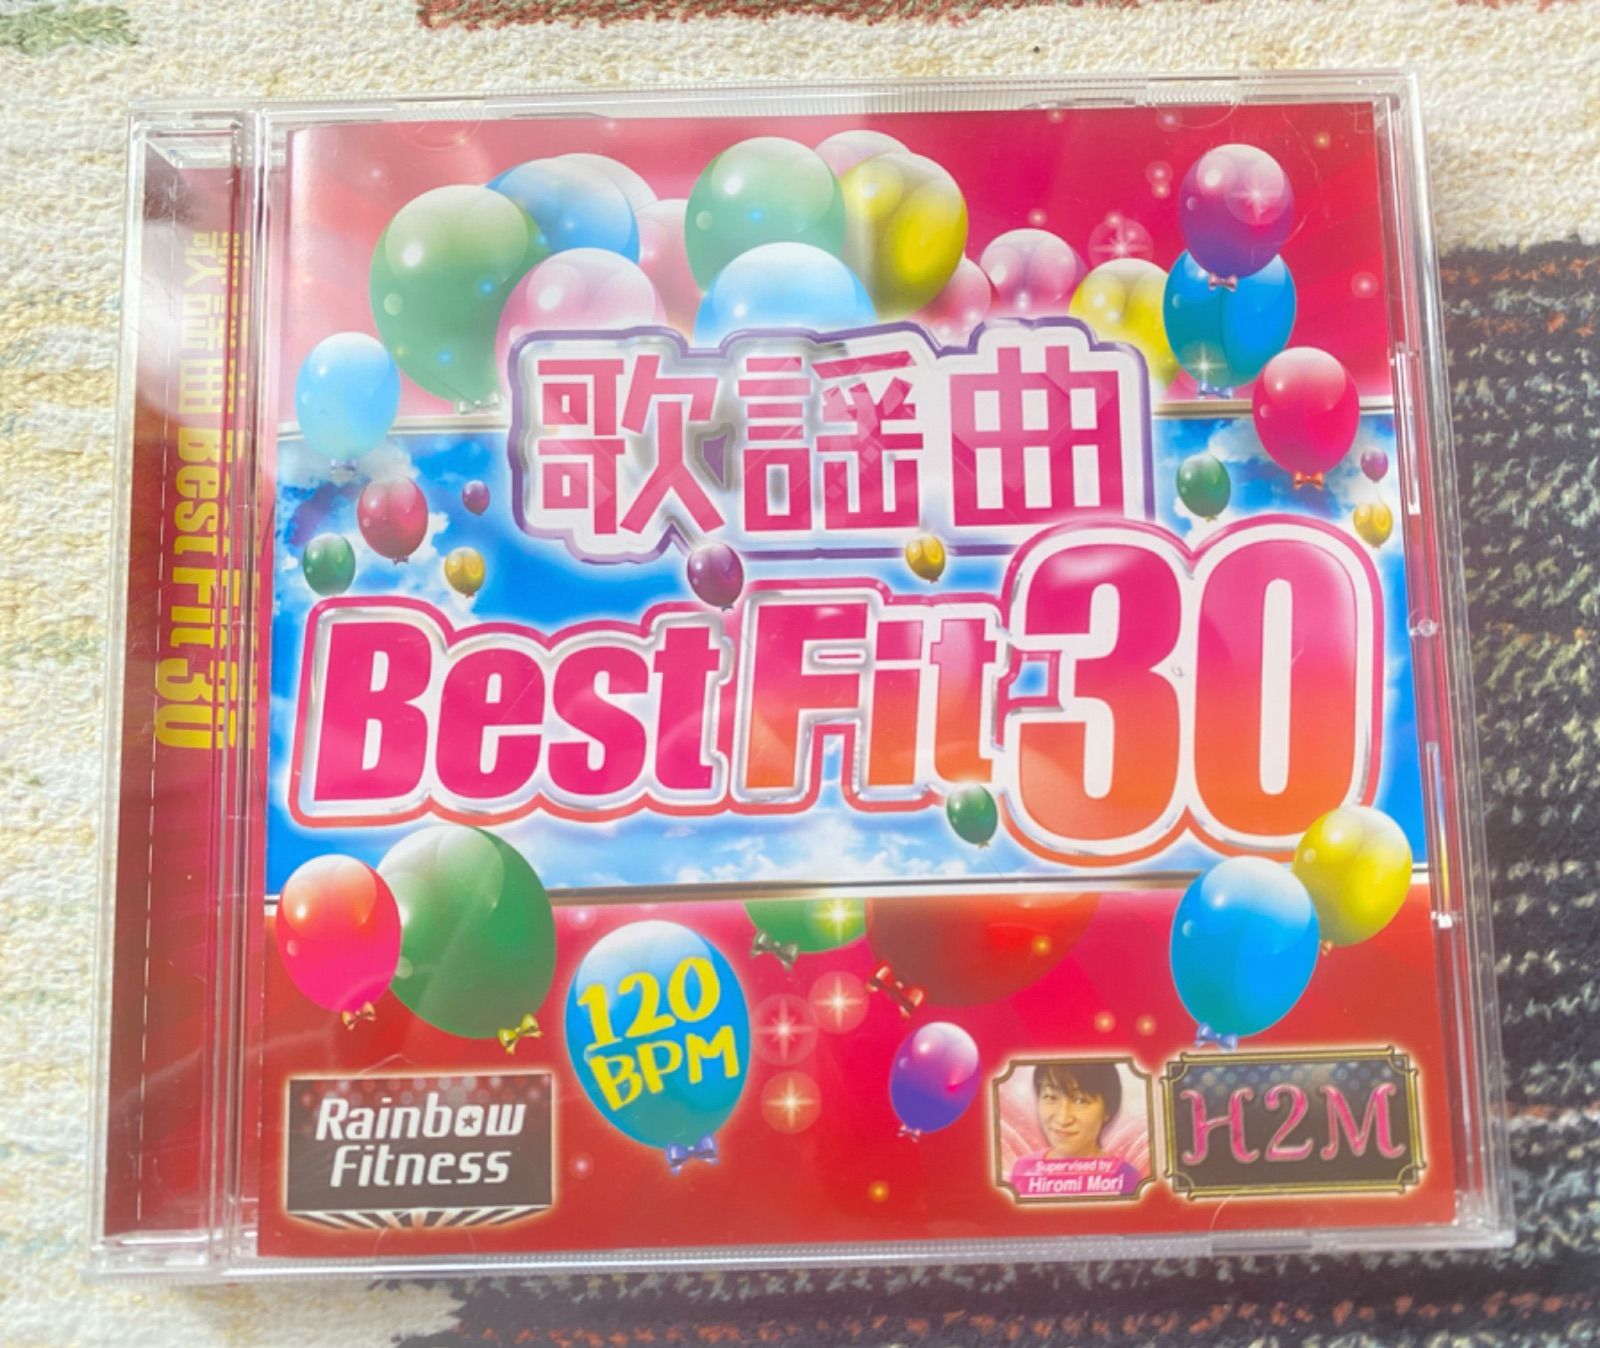 歌謡曲 BEST FIT 30 エアロビクスCD アクアビクスCD - メルカリ